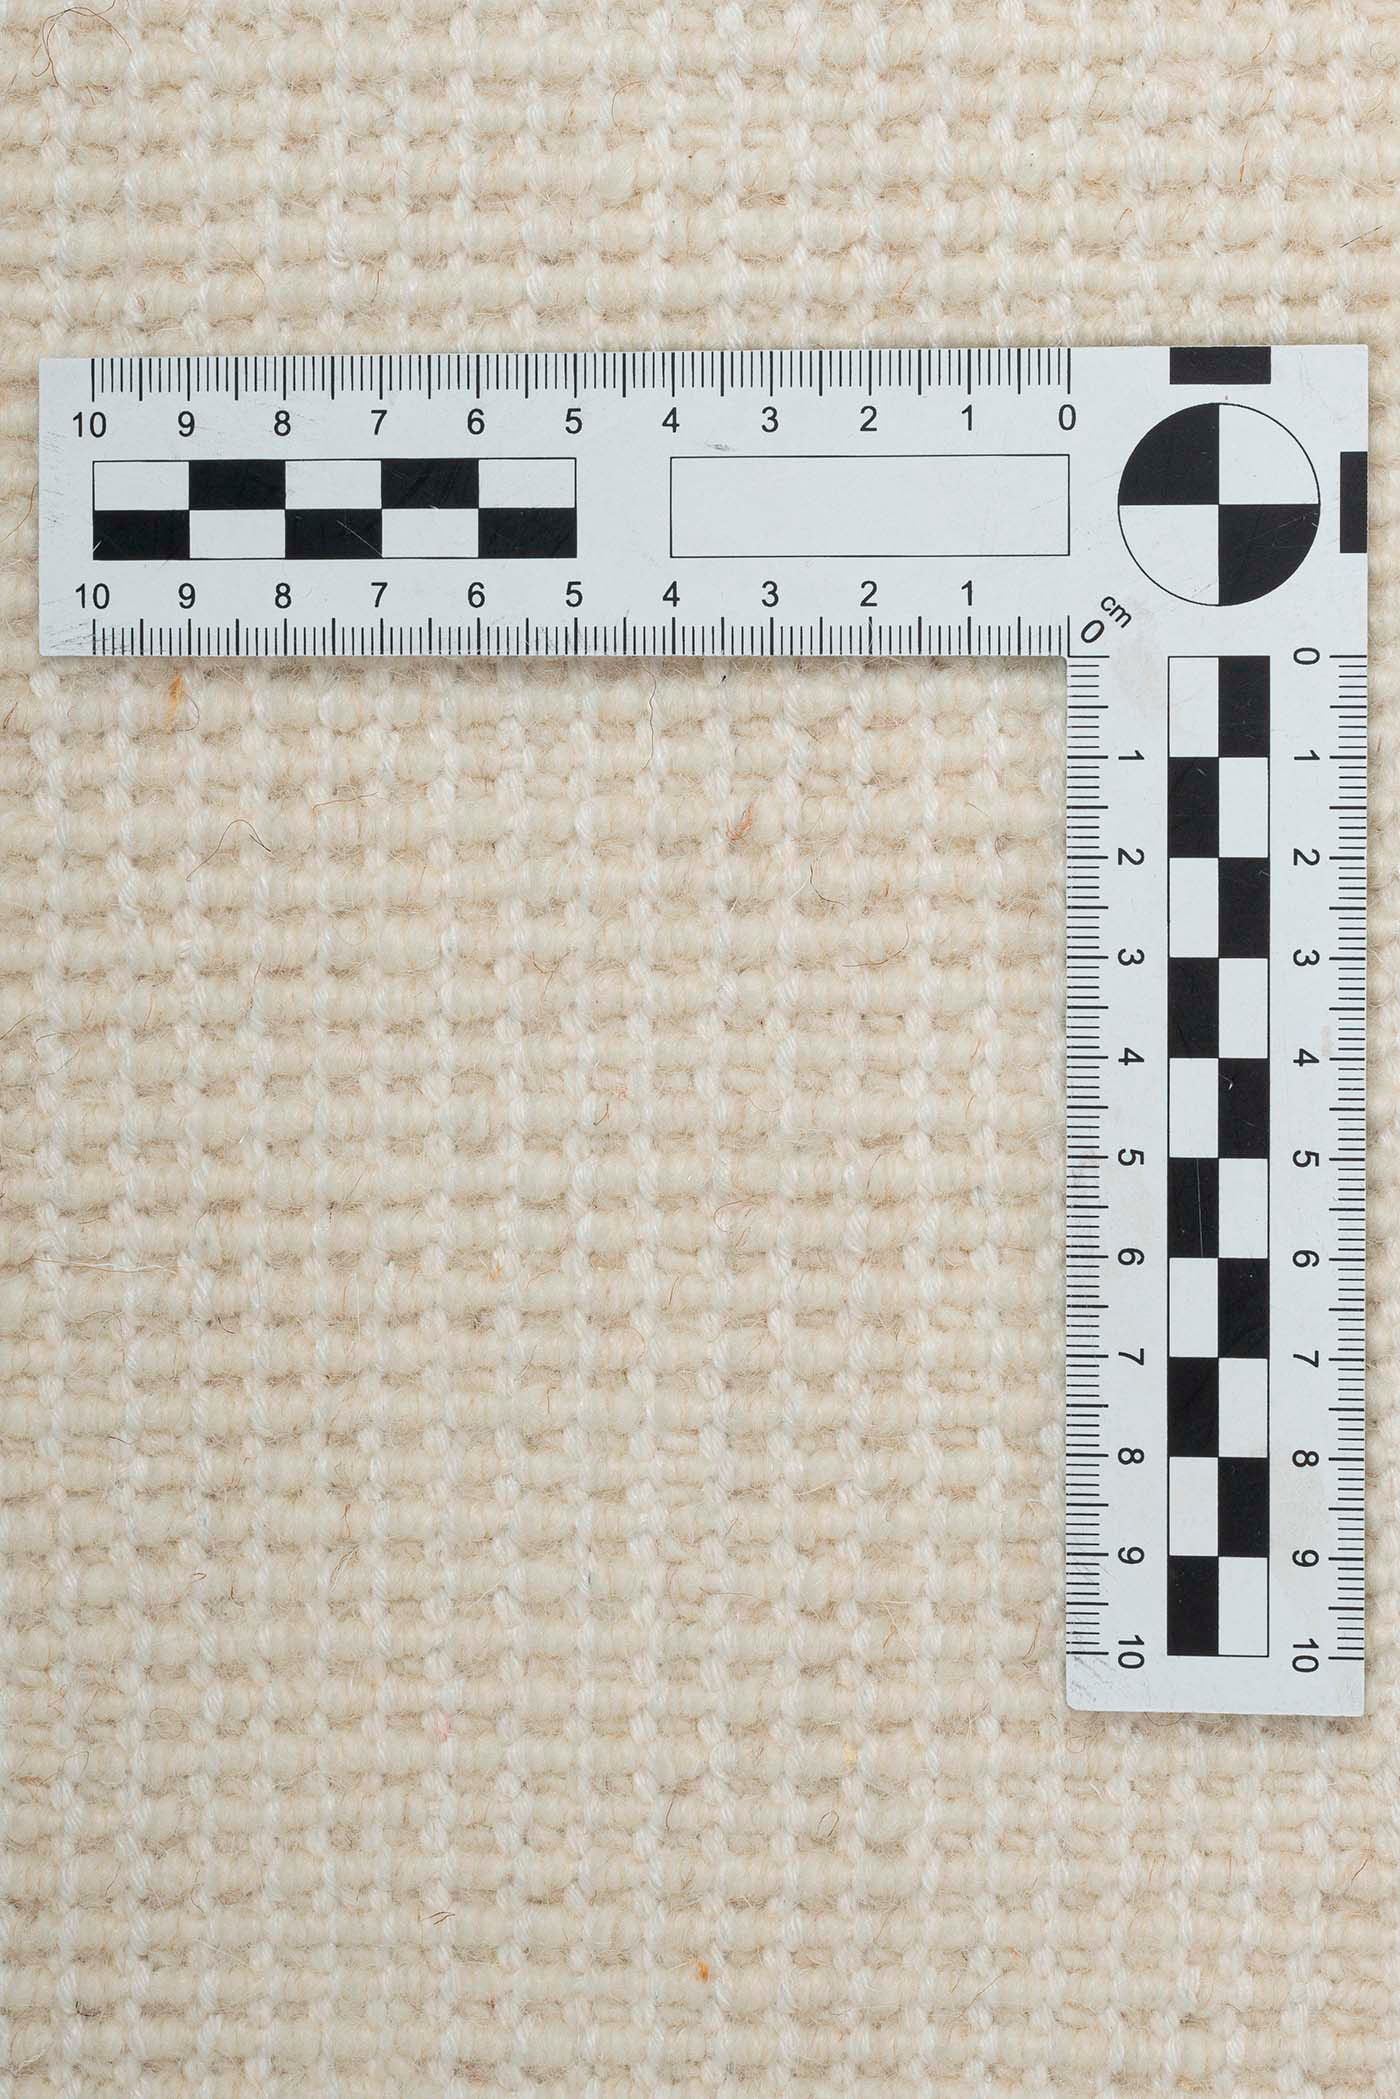 THEKO Wollteppich »Amravati«, rechteckig, echter Berber Teppich, reine Wolle, handgeknüpft, auch als Läufer